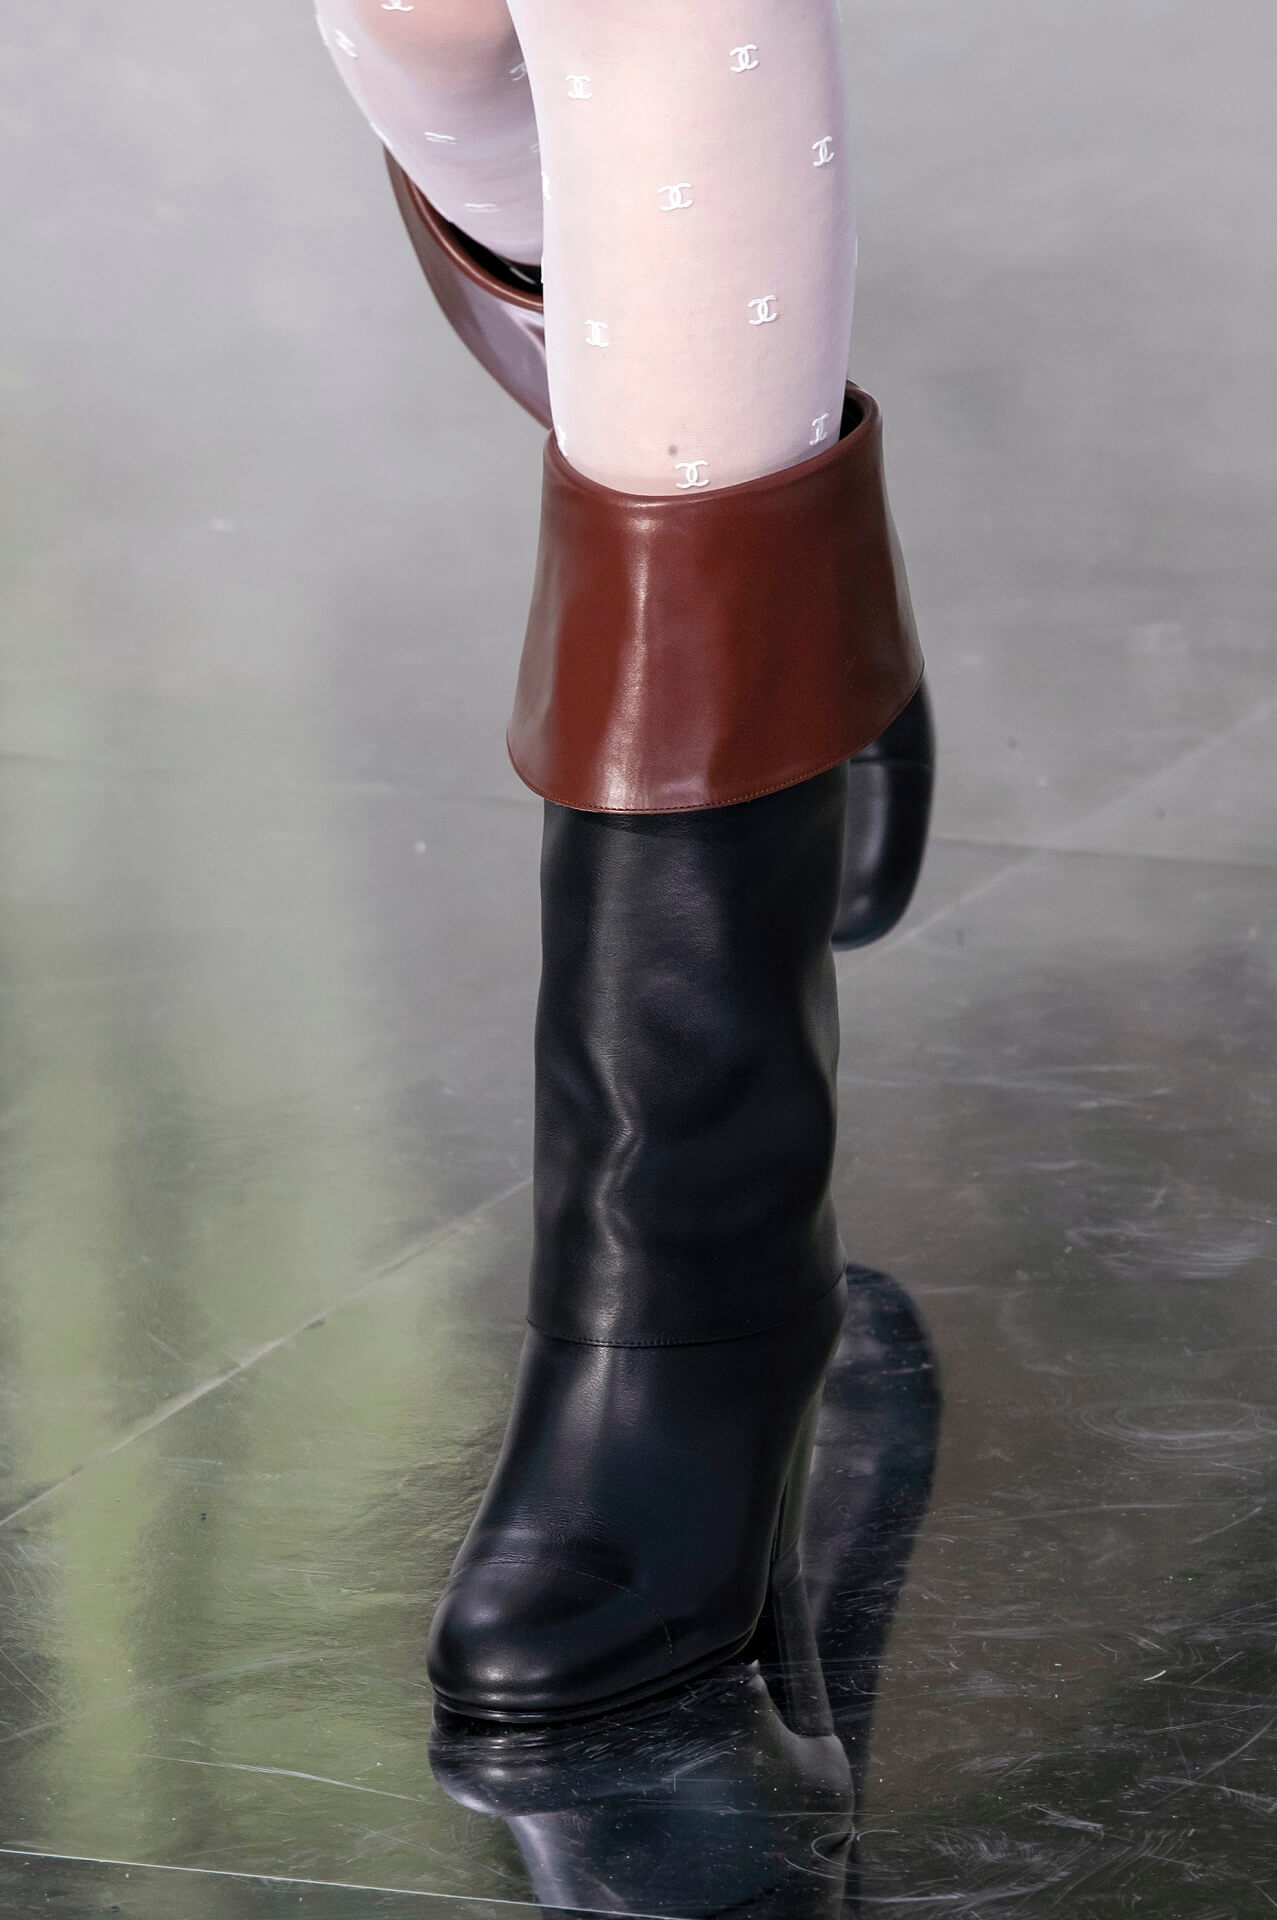 Королівський гамбіт: 16 модних пар чобіт на осінь-зиму 2020/21-Фото 8